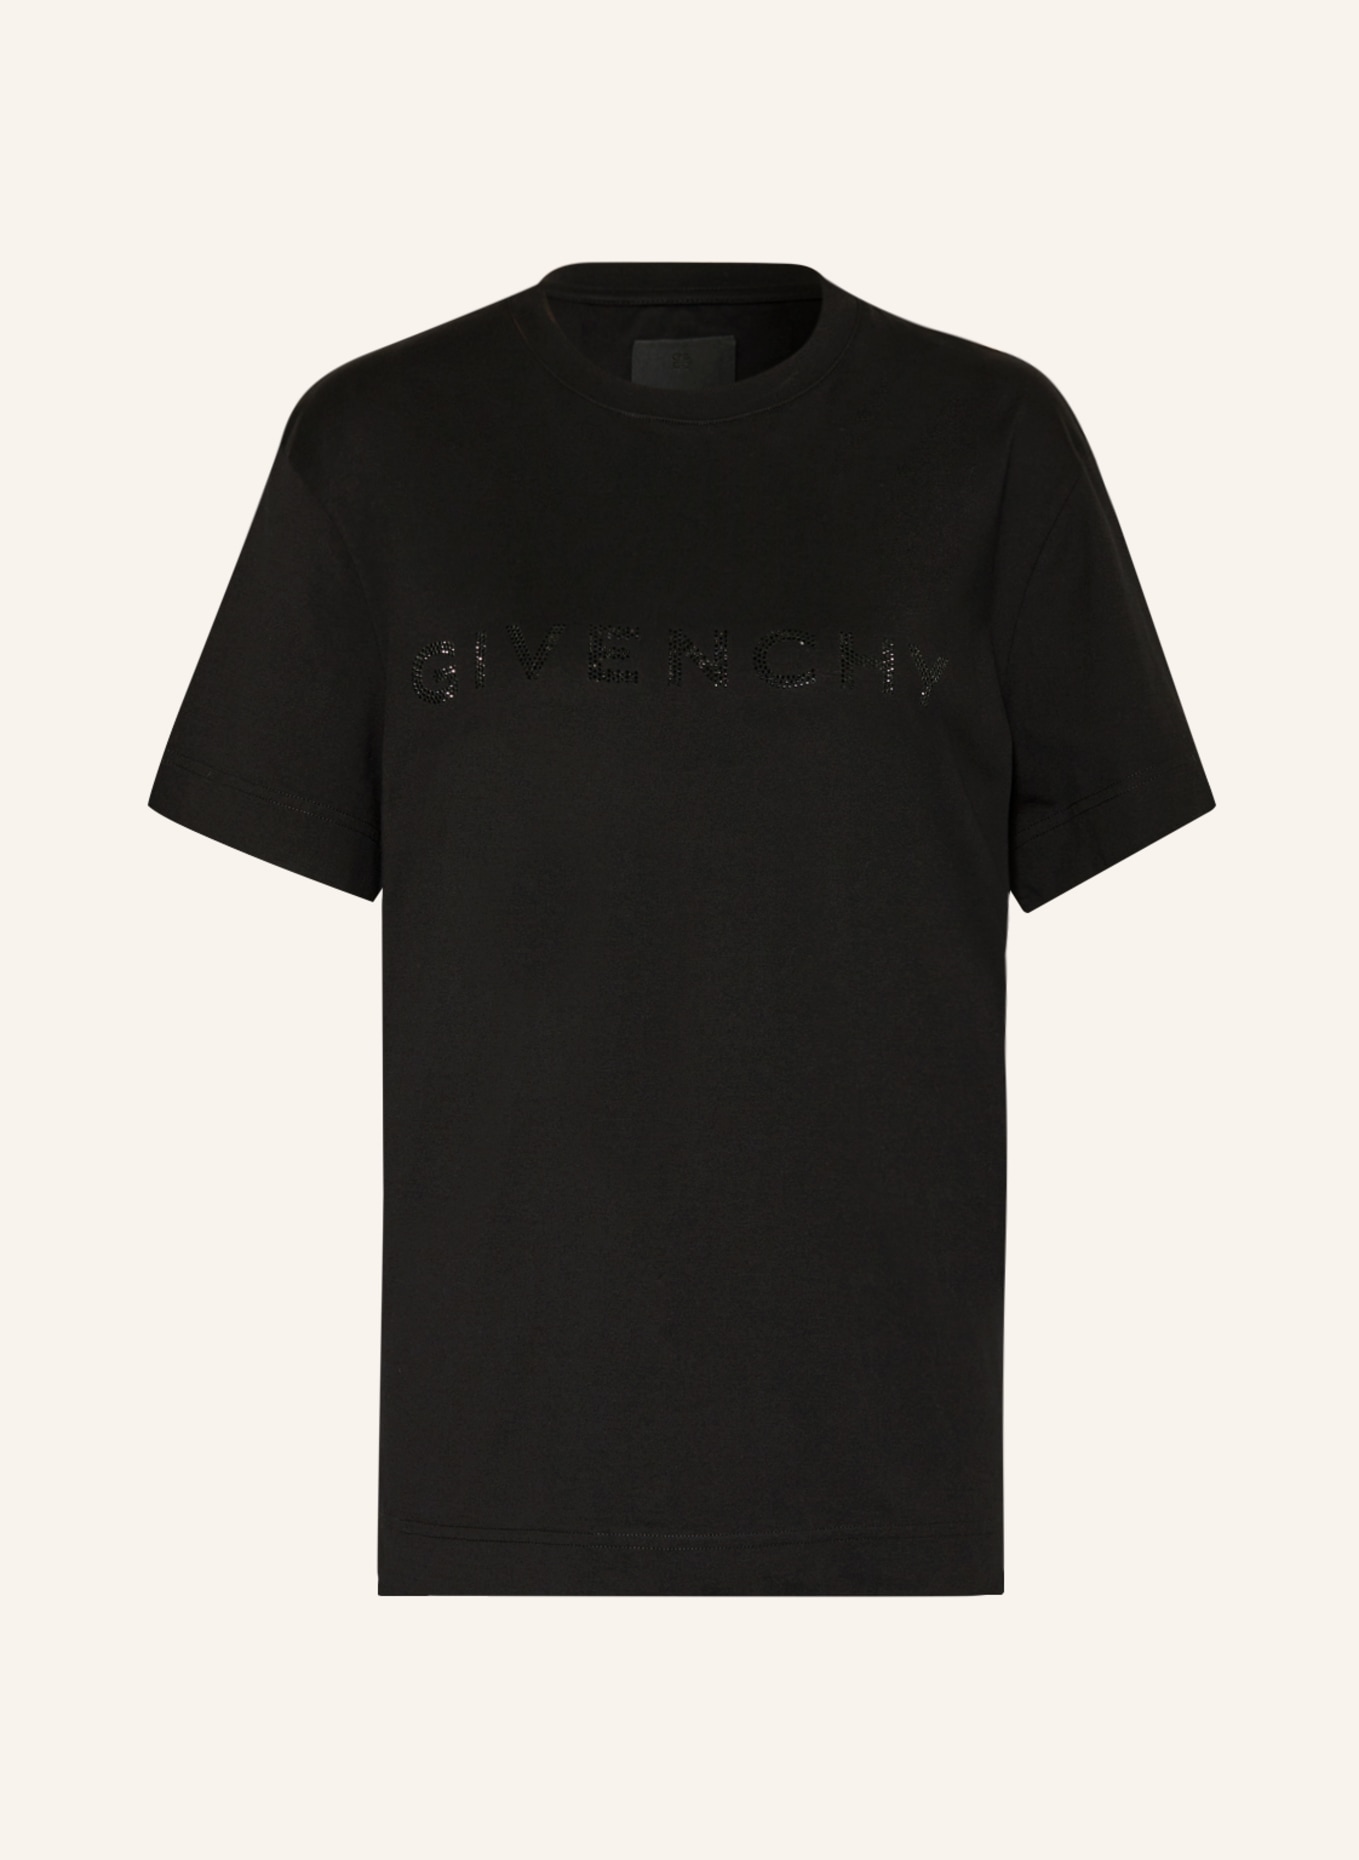 GIVENCHY T-Shirt mit Schmucksteinen, Farbe: SCHWARZ (Bild 1)